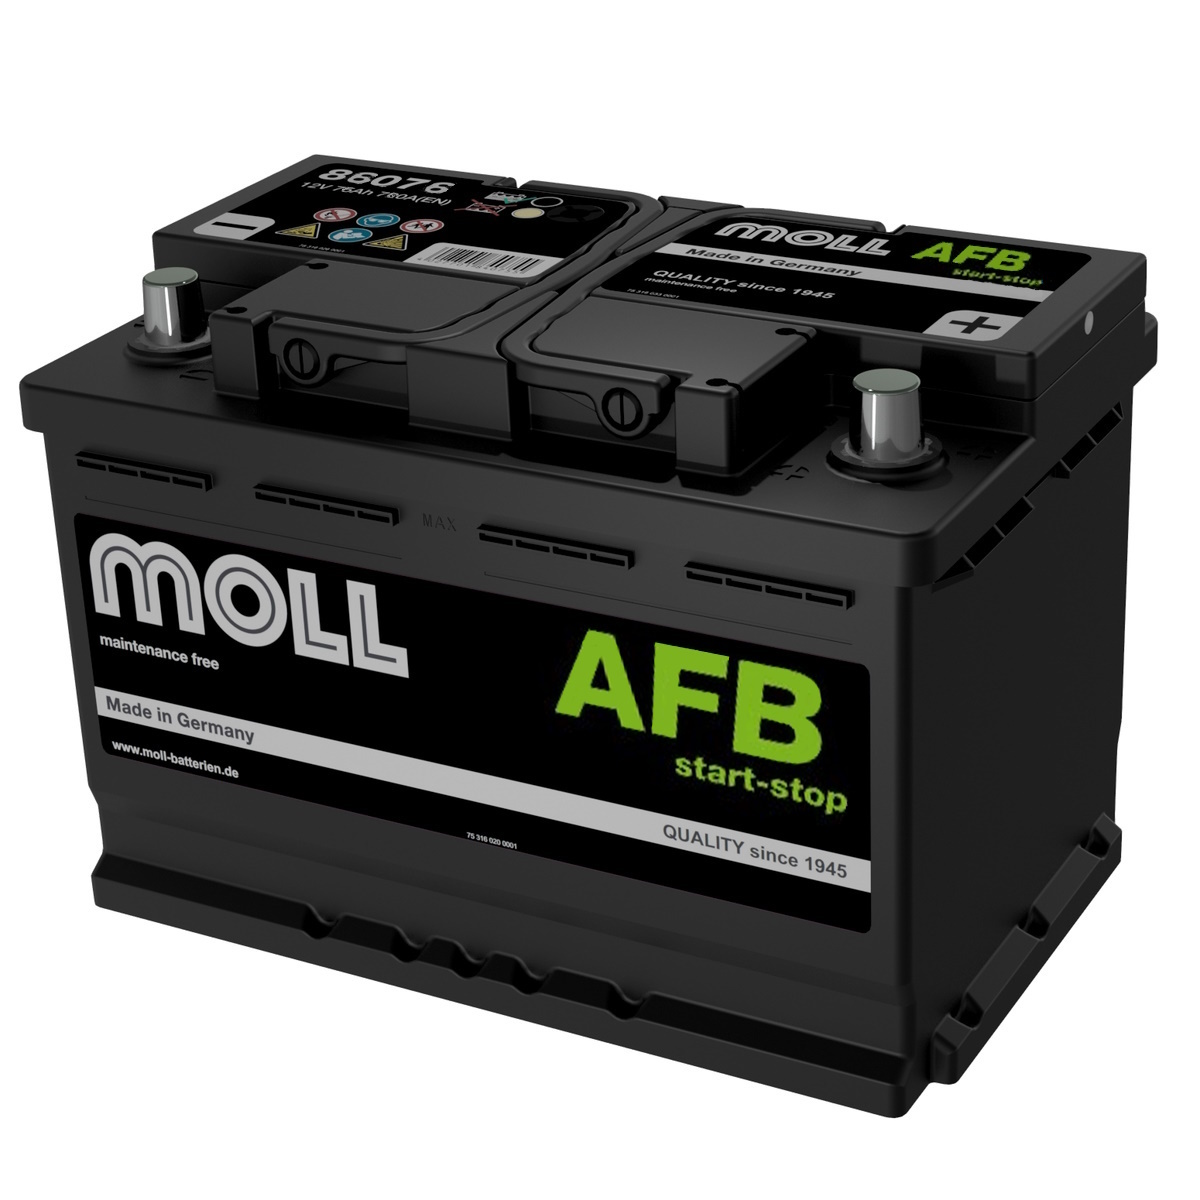 Аккумуляторы MOLL MOLL AFB 66R купить 8 906 062 07 78